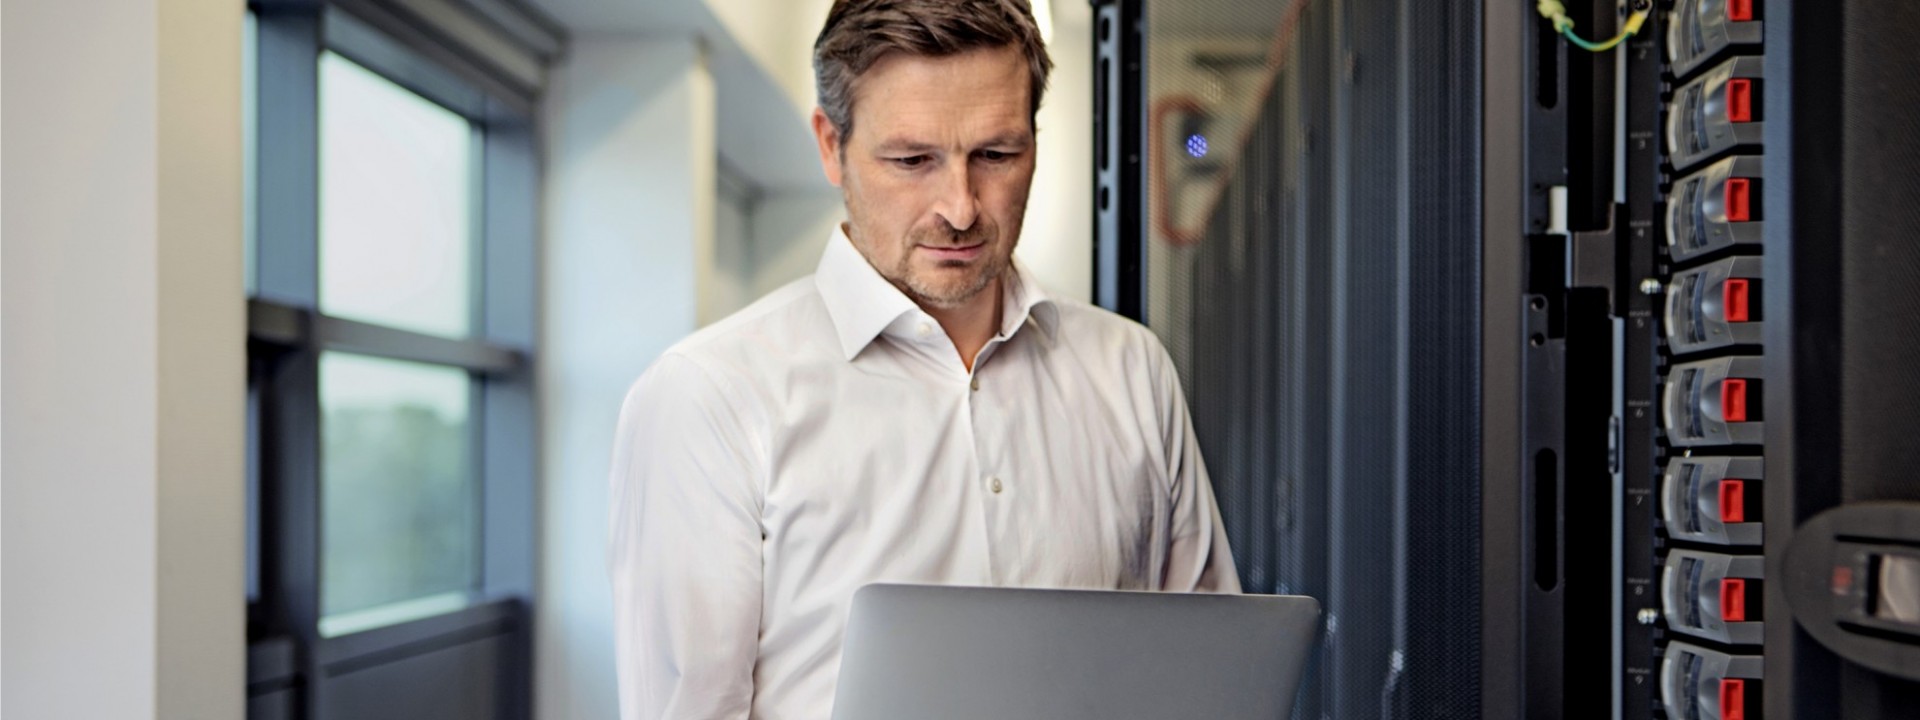 Ein etwa 40 jähriger Mann in weißem Hemd steht mit einem Laptop in der Hand vor einem Server.